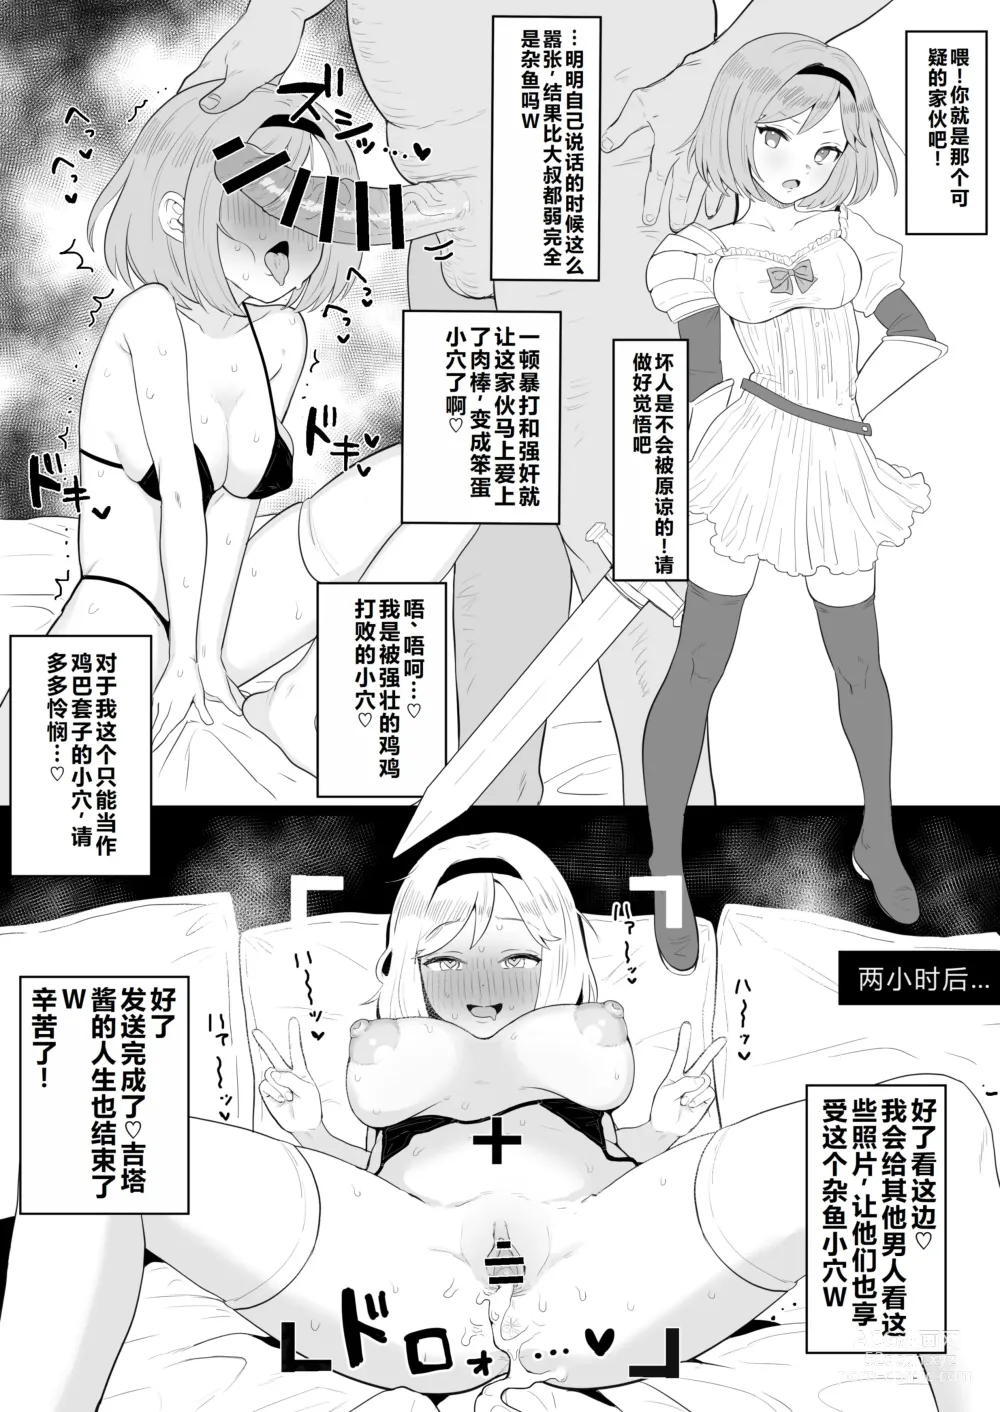 Page 17 of doujinshi Hitokuchi Echi Manga Tsumeawase